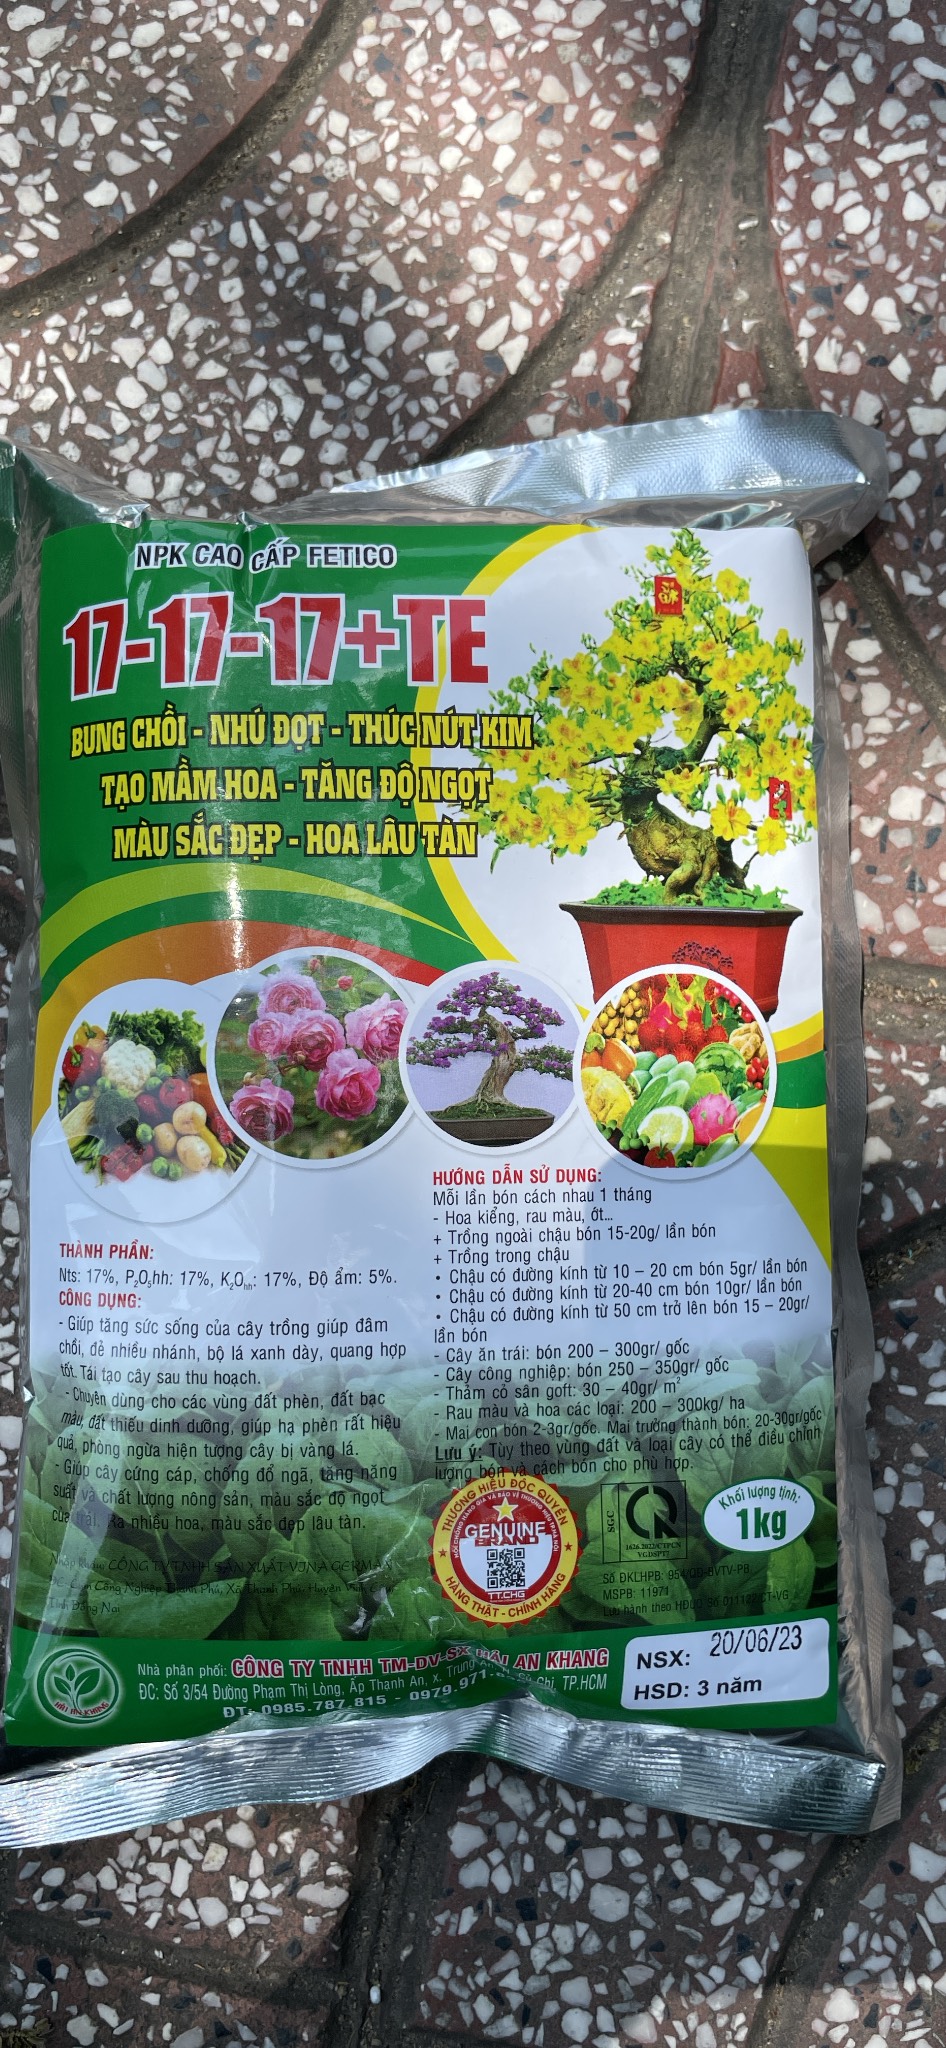 Phân bón NPK cao cấp 17-17-17 + Te chuyên hoa mai cây kiểng rau màu  gói 1kg